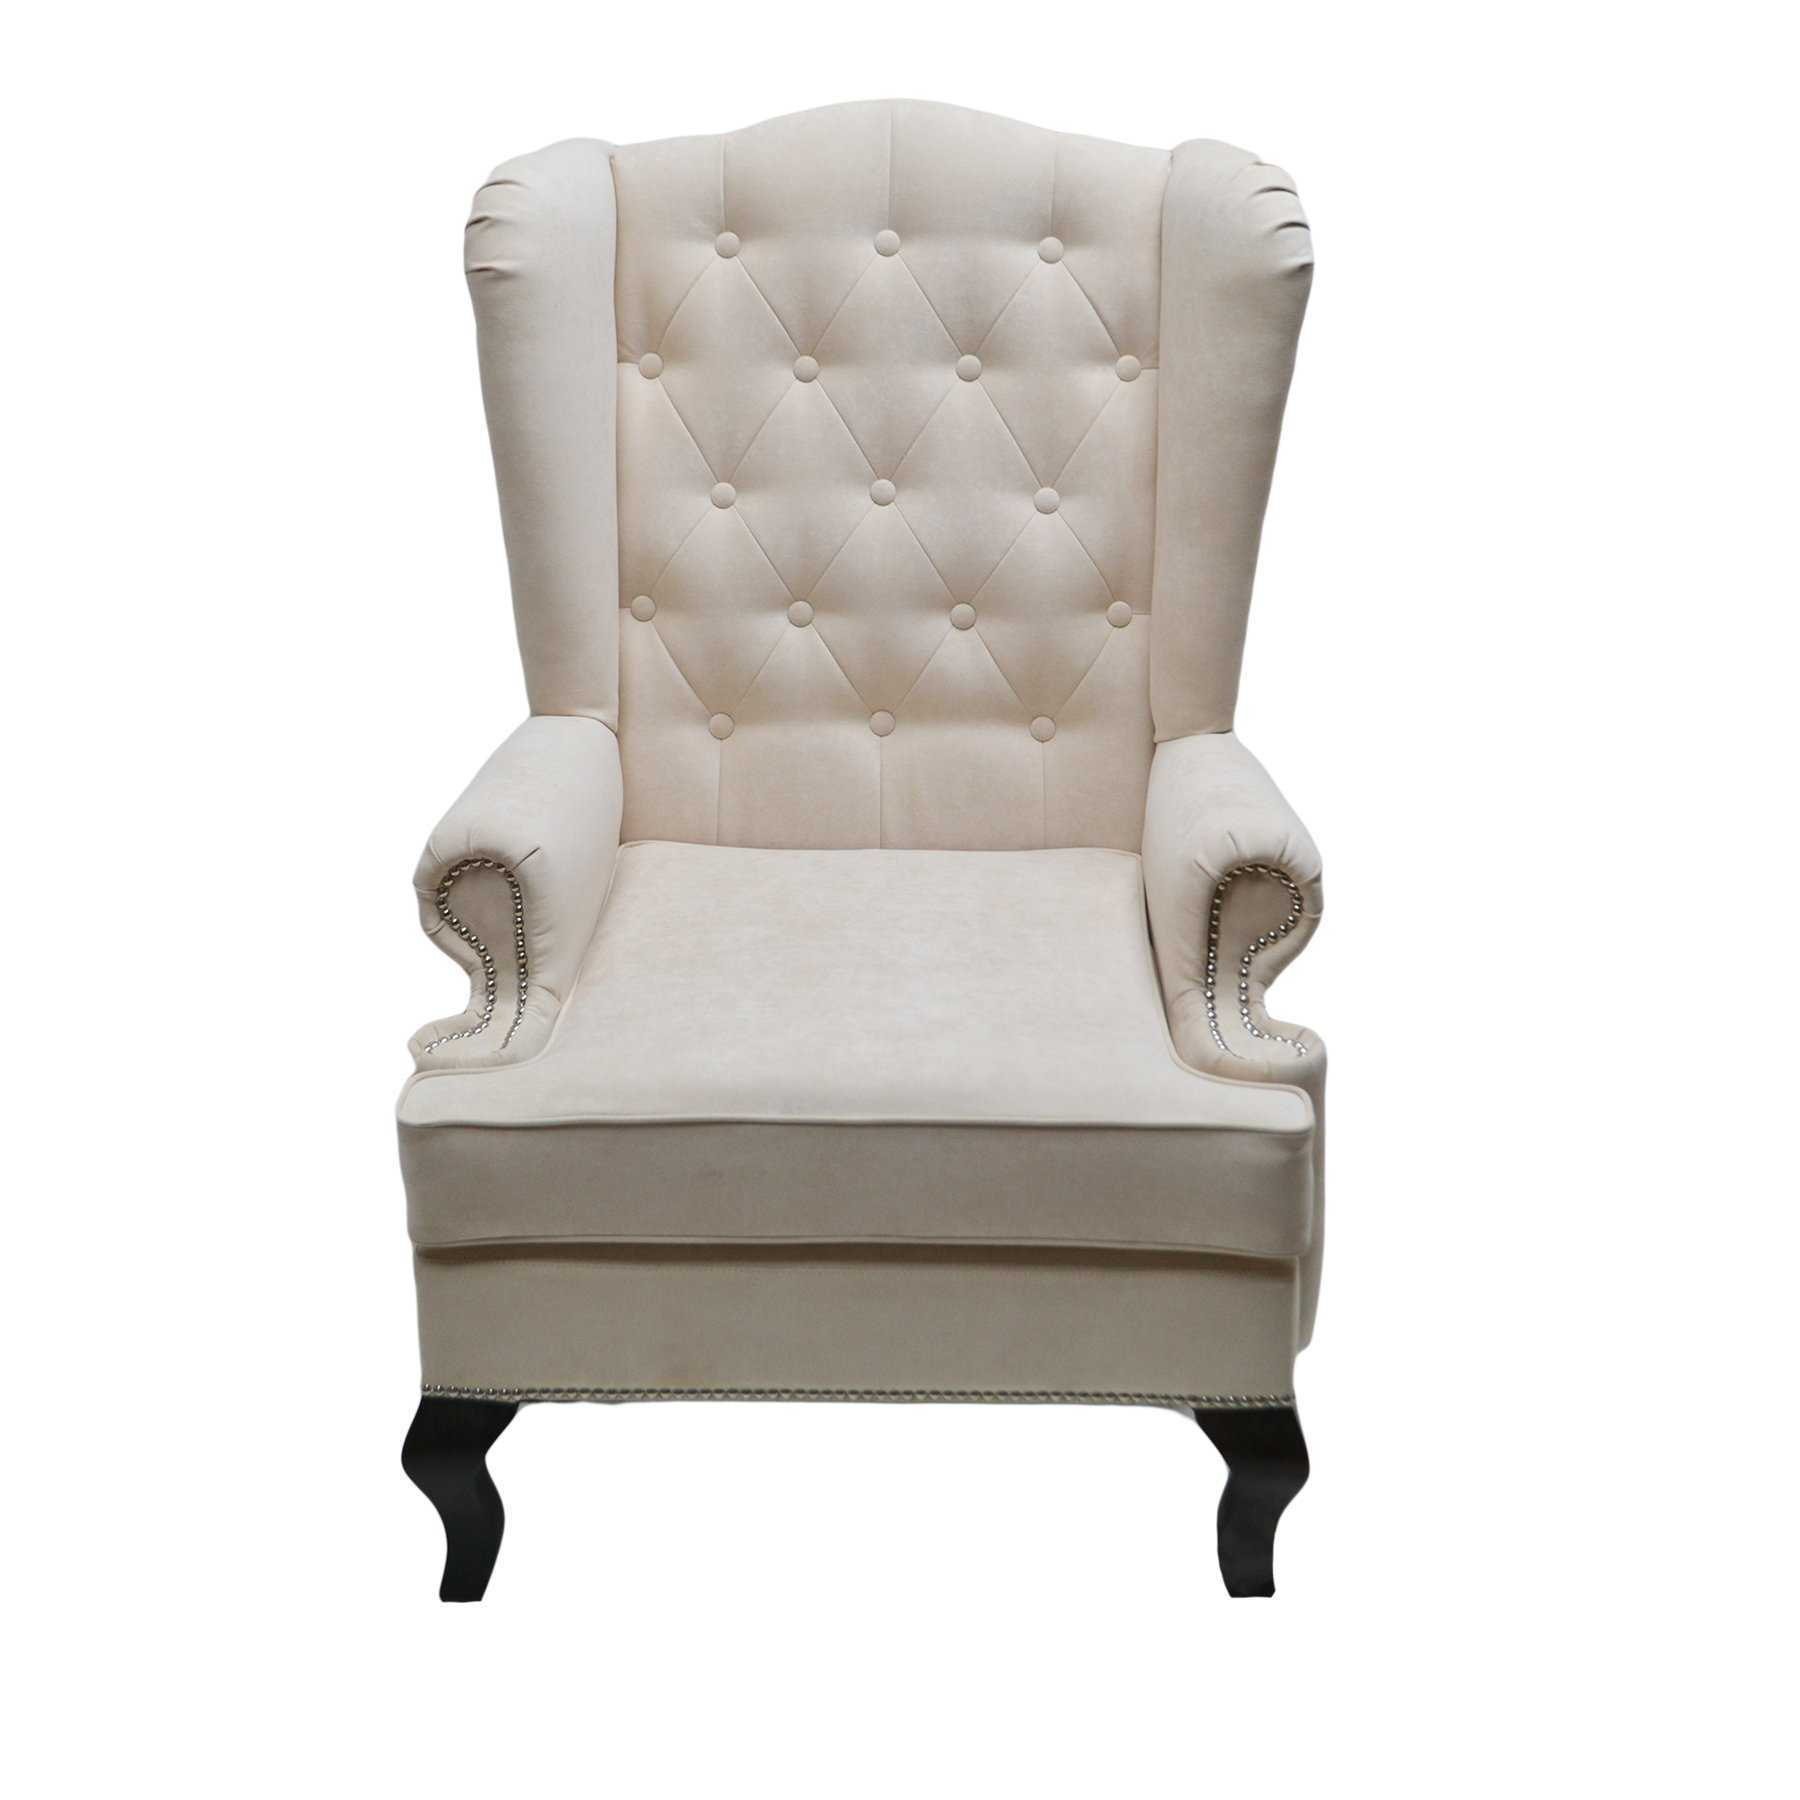 Английские кресла (43 фото): каминное кресло с ушами своими руками, ушастая мебель для камина, варианты с ушками, в стиле англииь